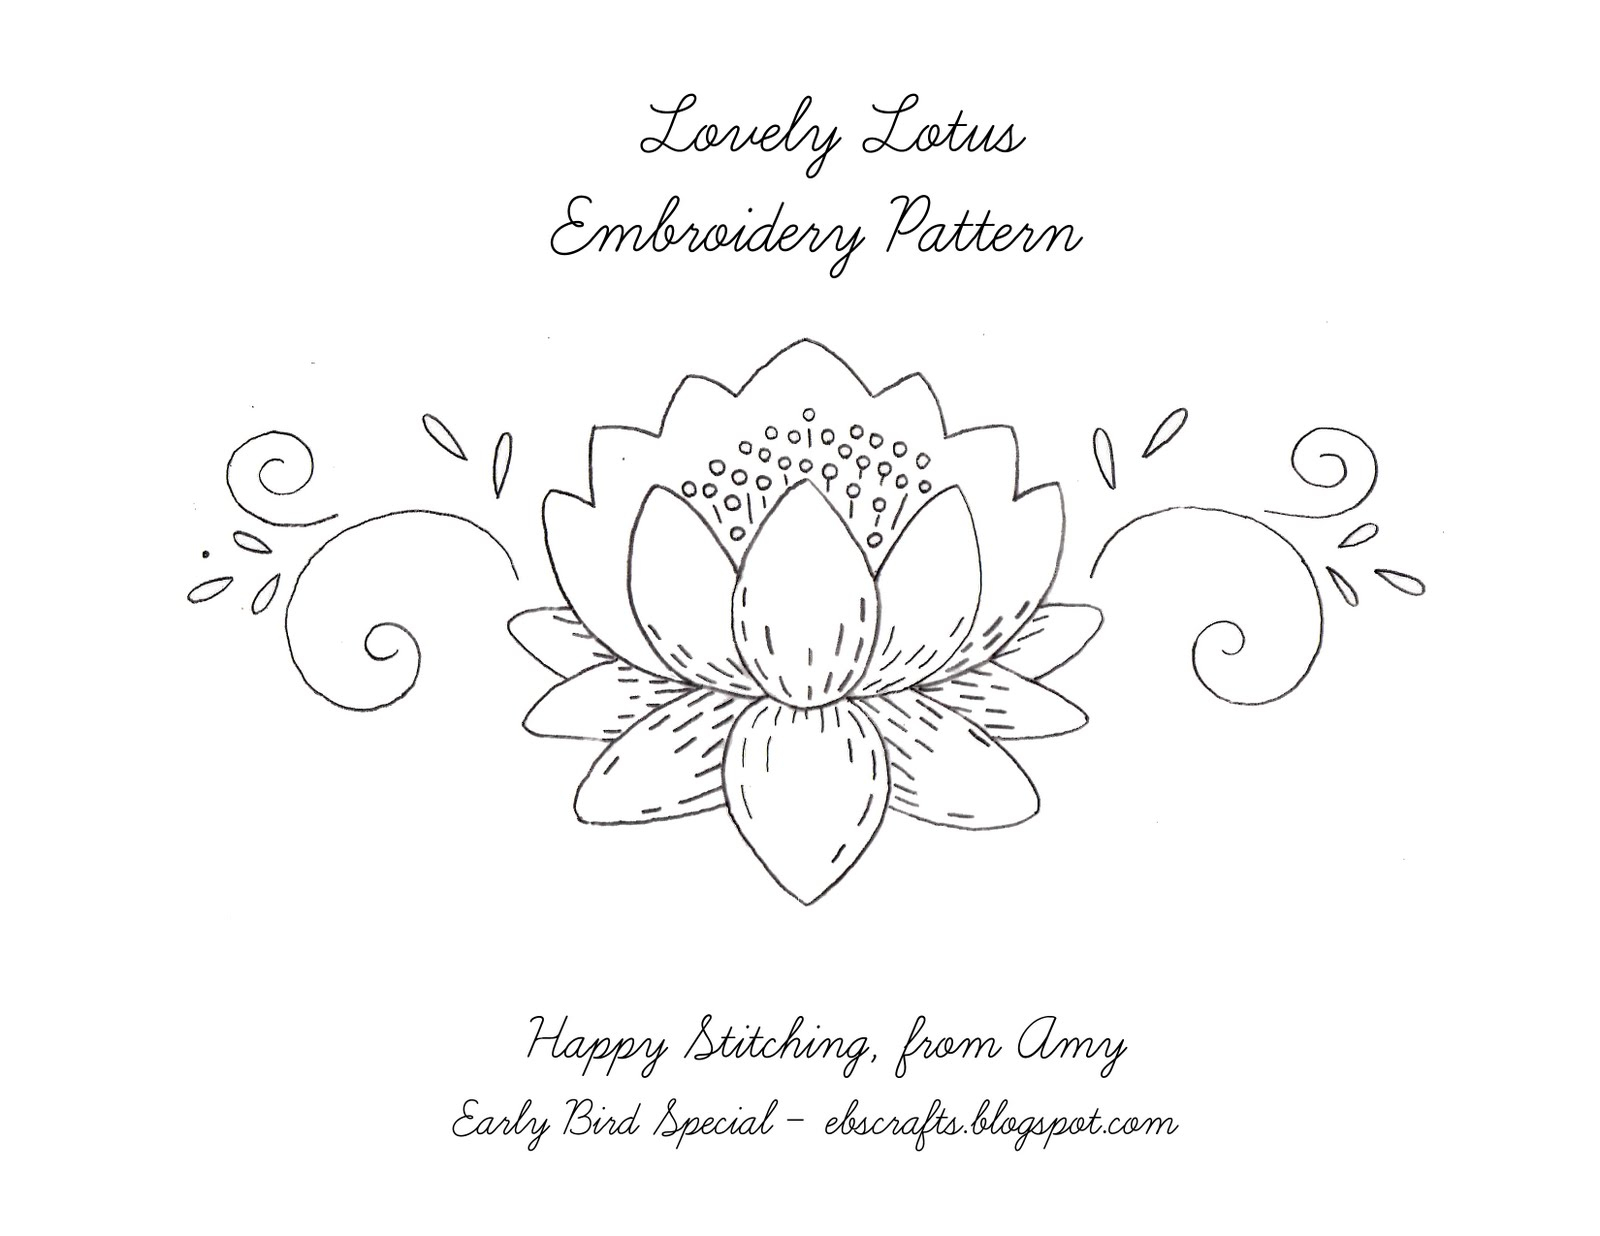 Free Embroidery Patterns Free Embroidery Pattern Lovely Lotus Bindel Bird